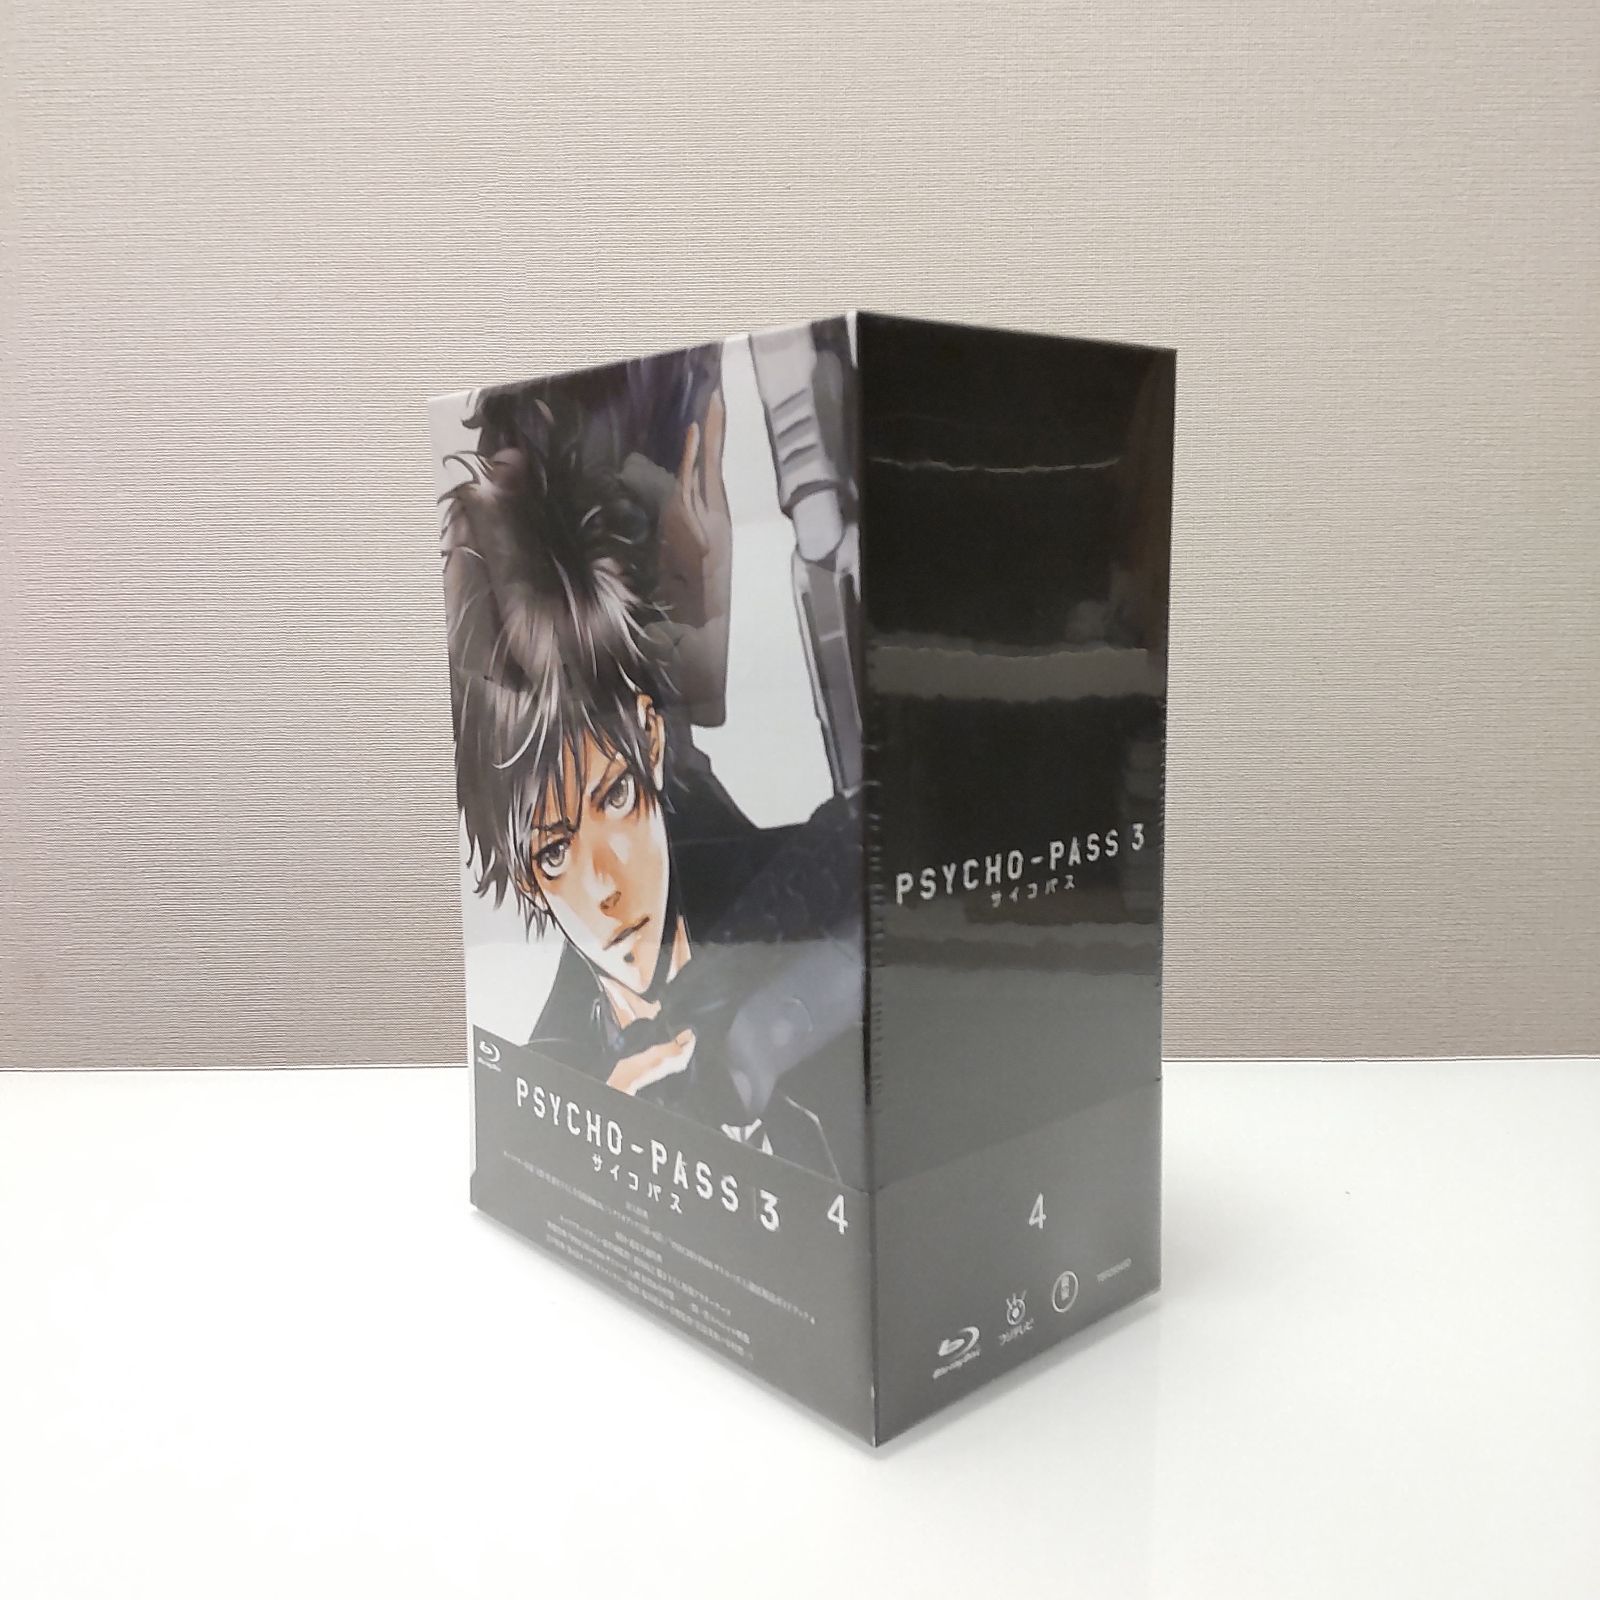 PSYCHO-PASS サイコパス 3 初回生産限定版 Blu-ray Vol.1-4 全4巻 